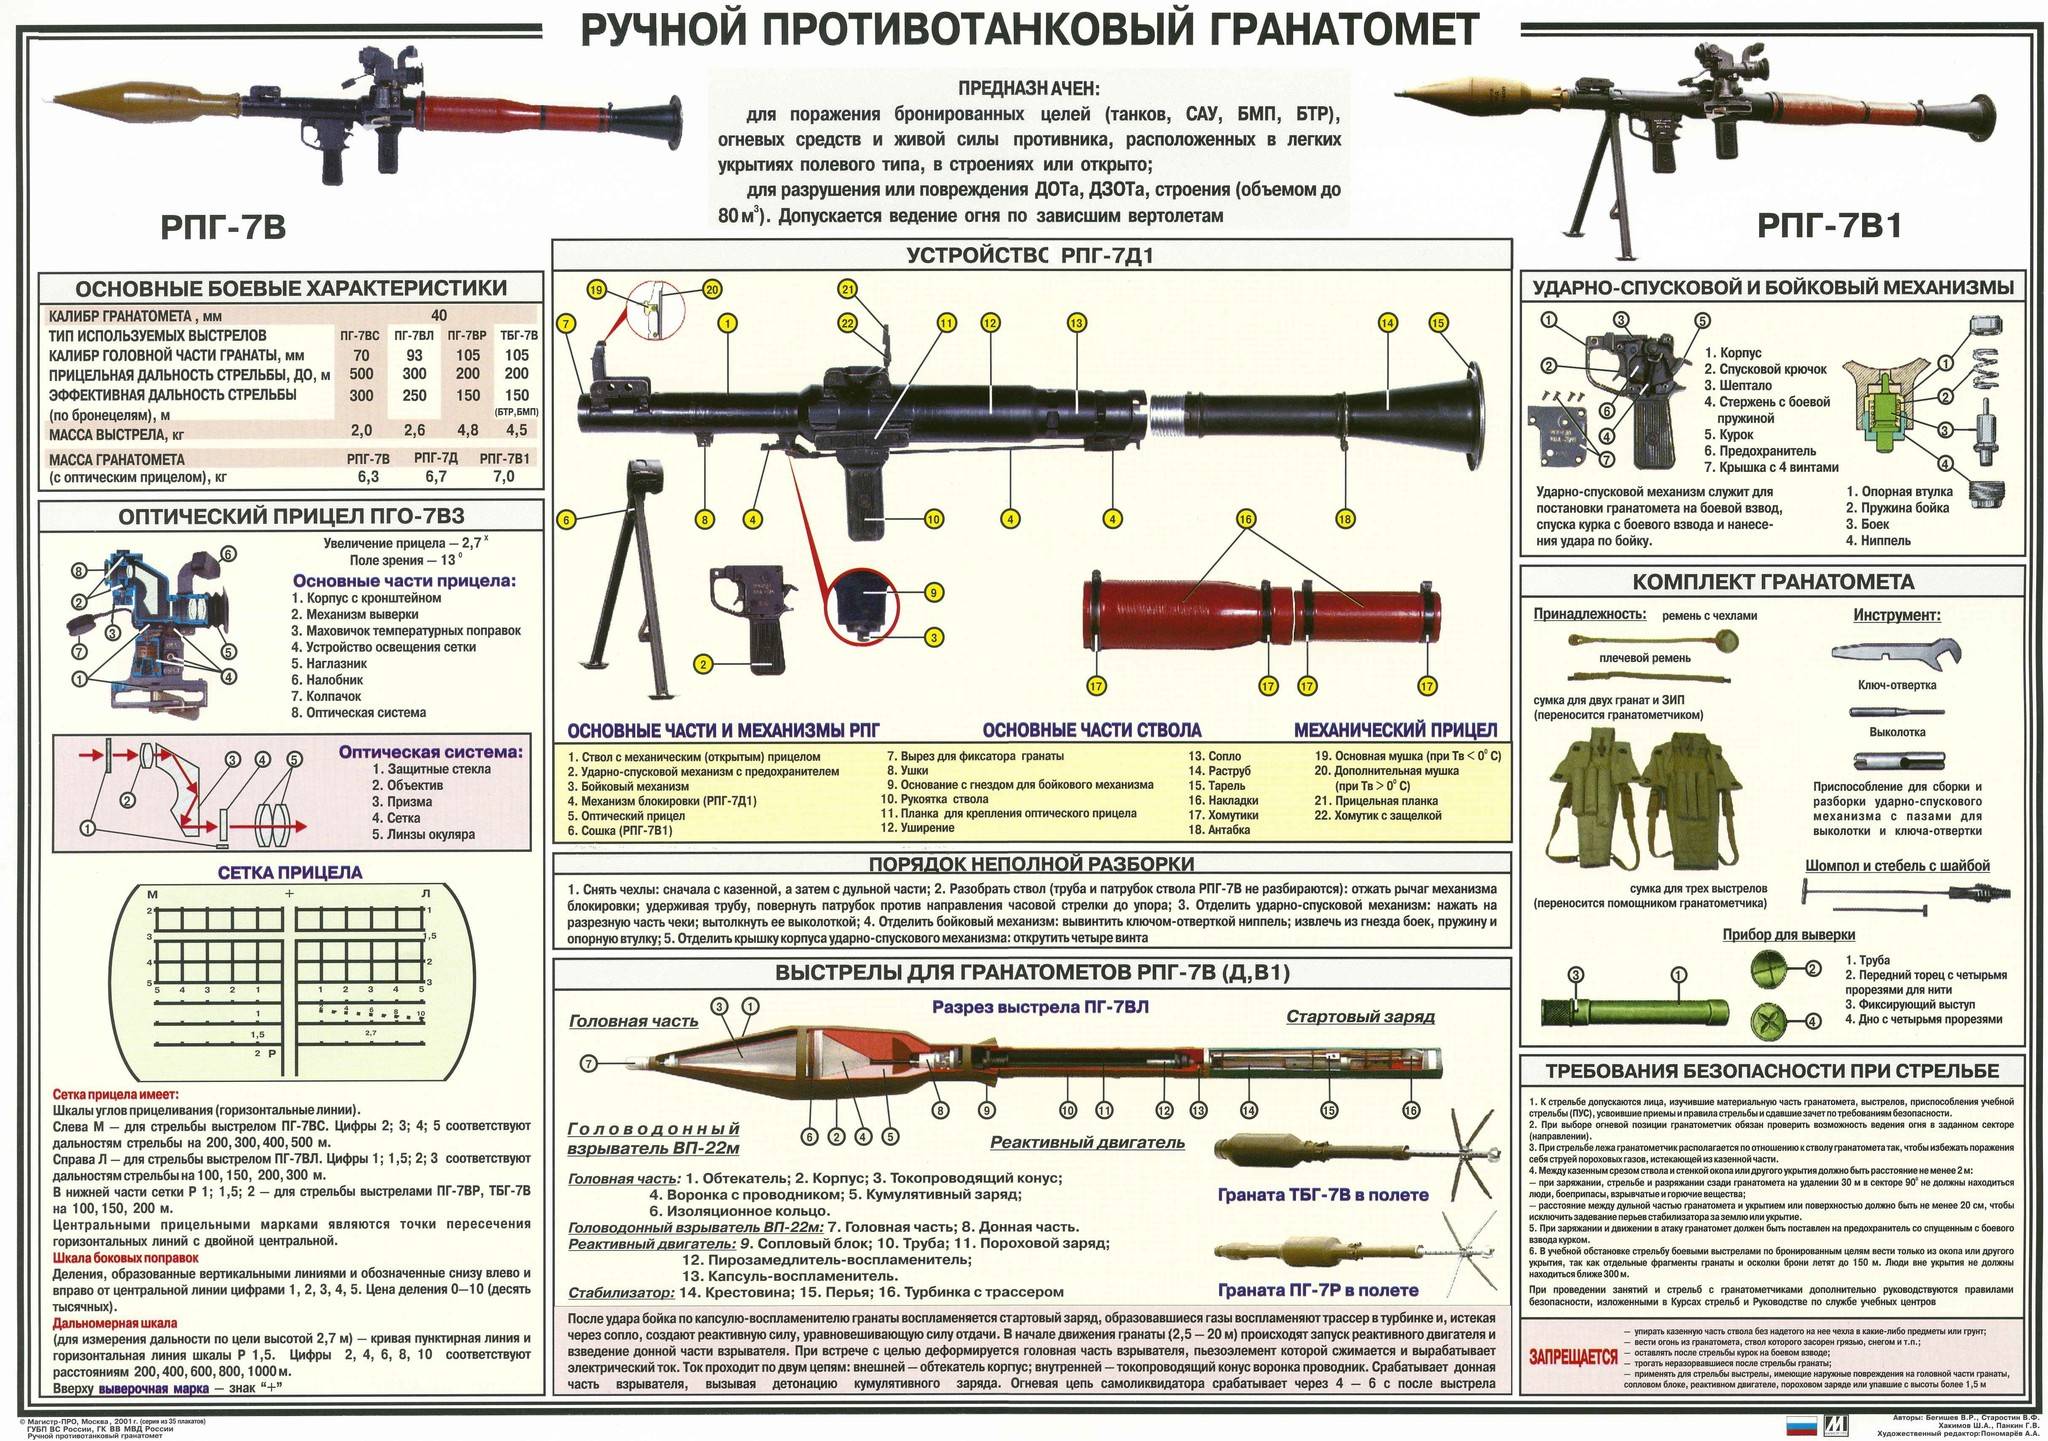 Ручной противотанковый гранатомет РПГ-7: ТТХ и боевое применение